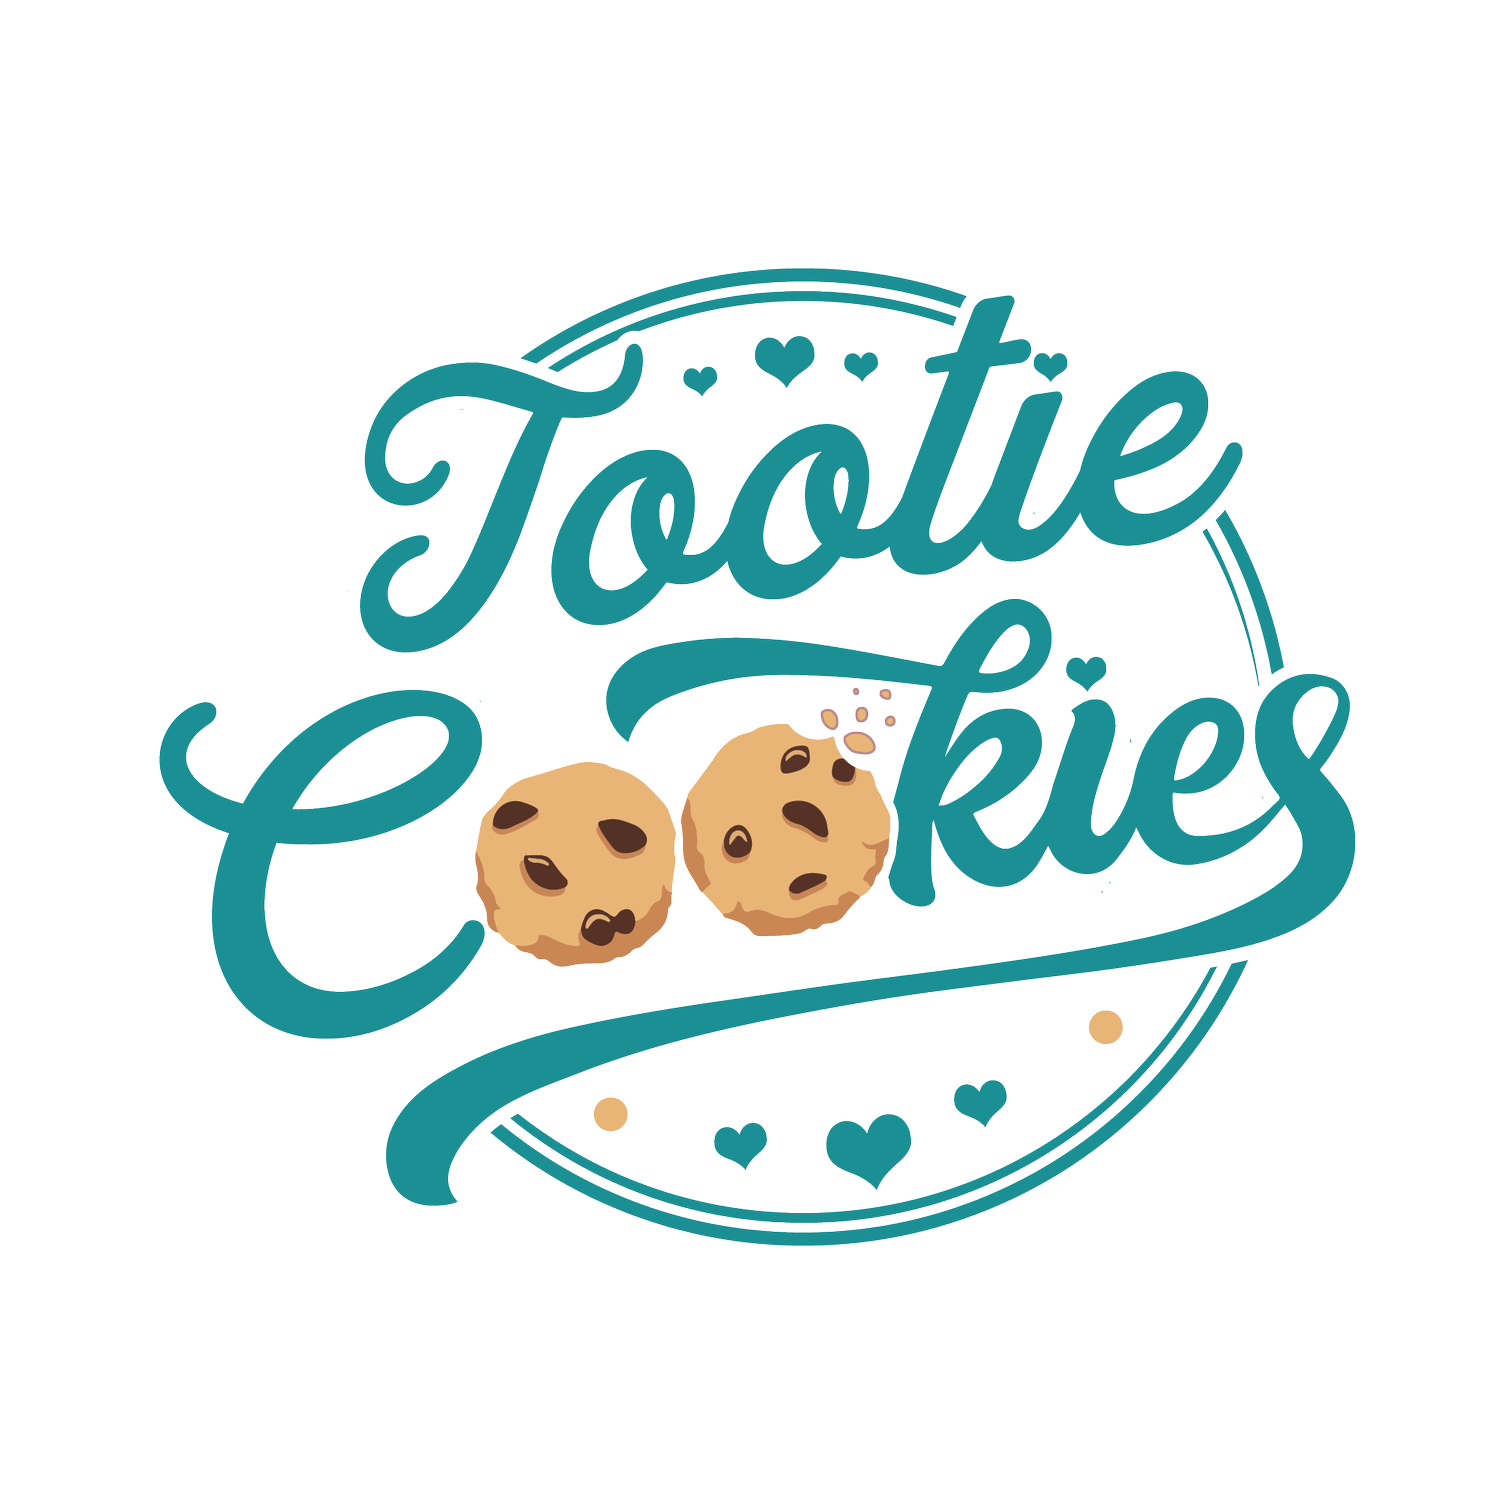 Tootie Cookies